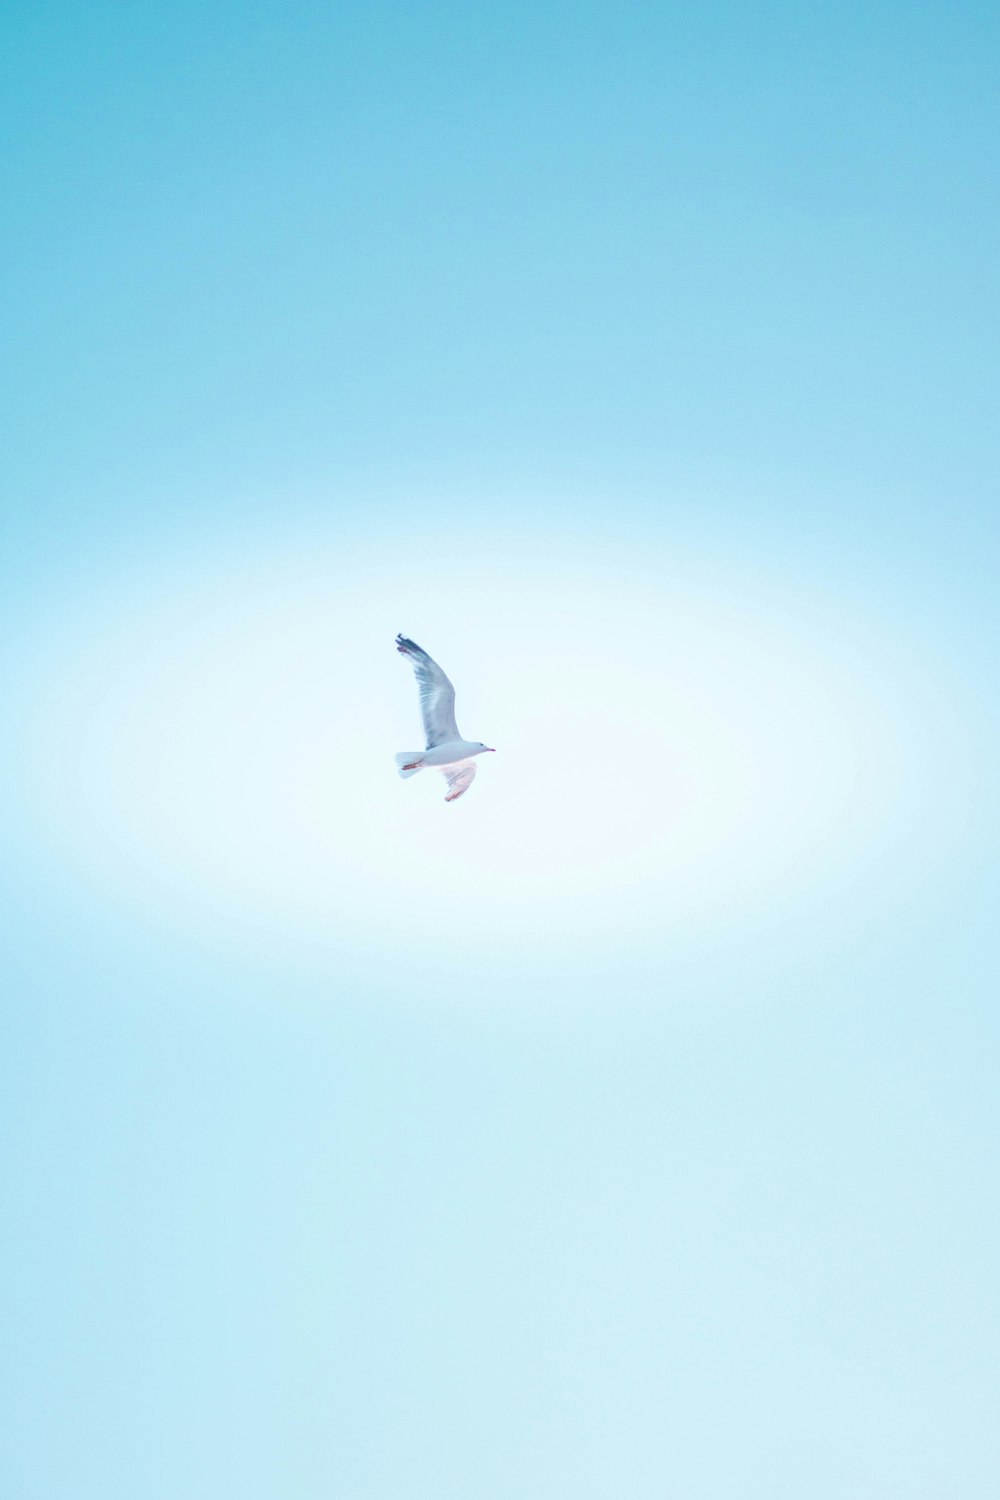 white bird flying in the sky